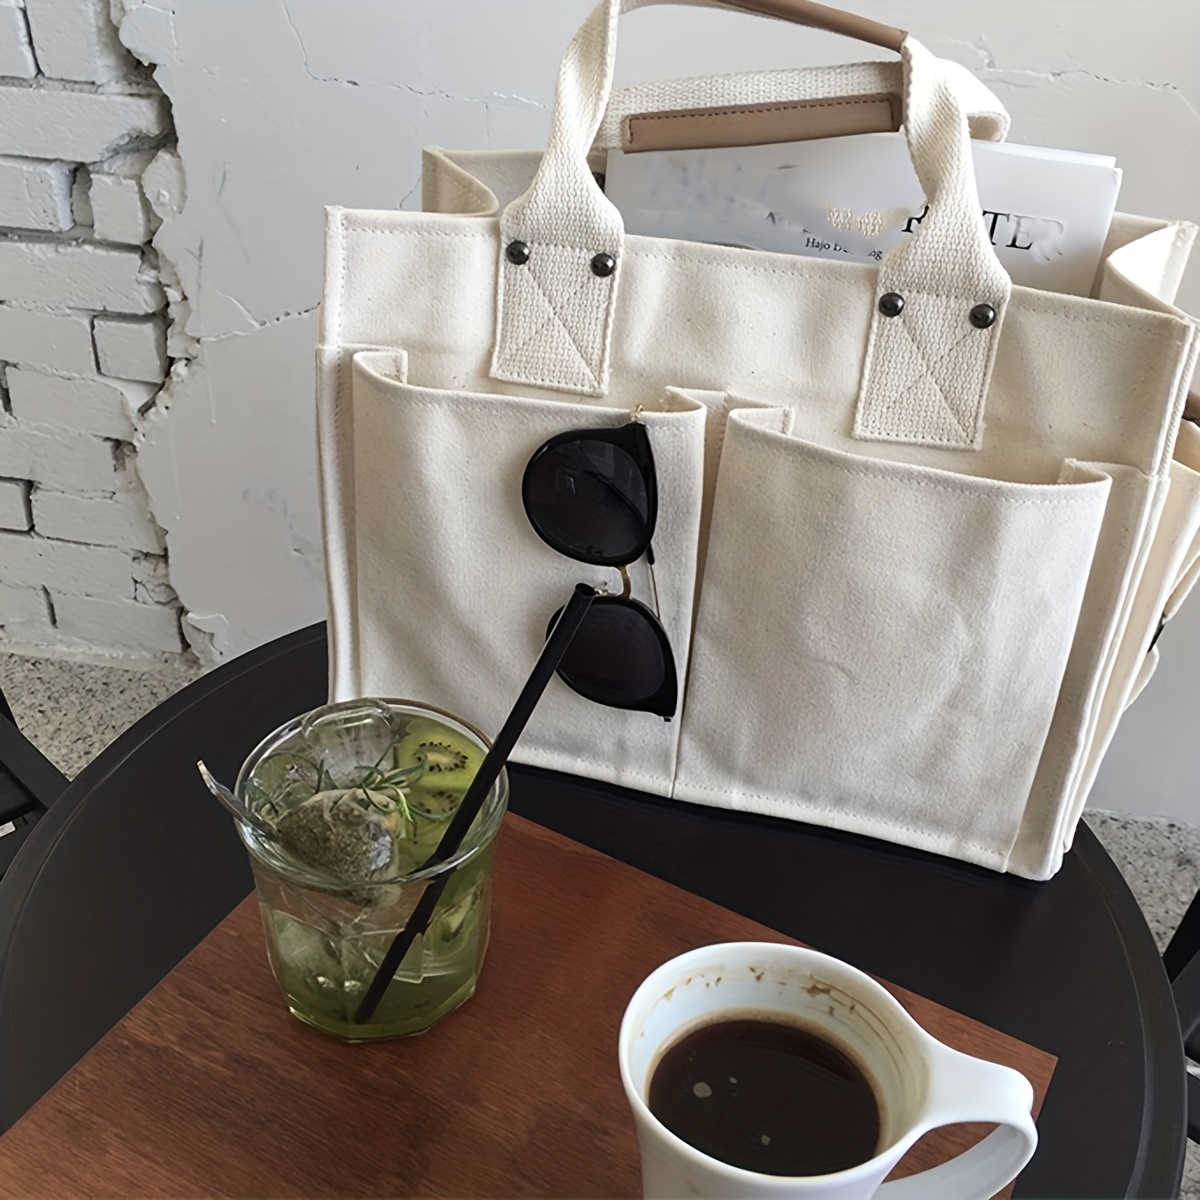 Large Capacity Shoulder Bag Bookbag Shopping Tote Bag With - Temu